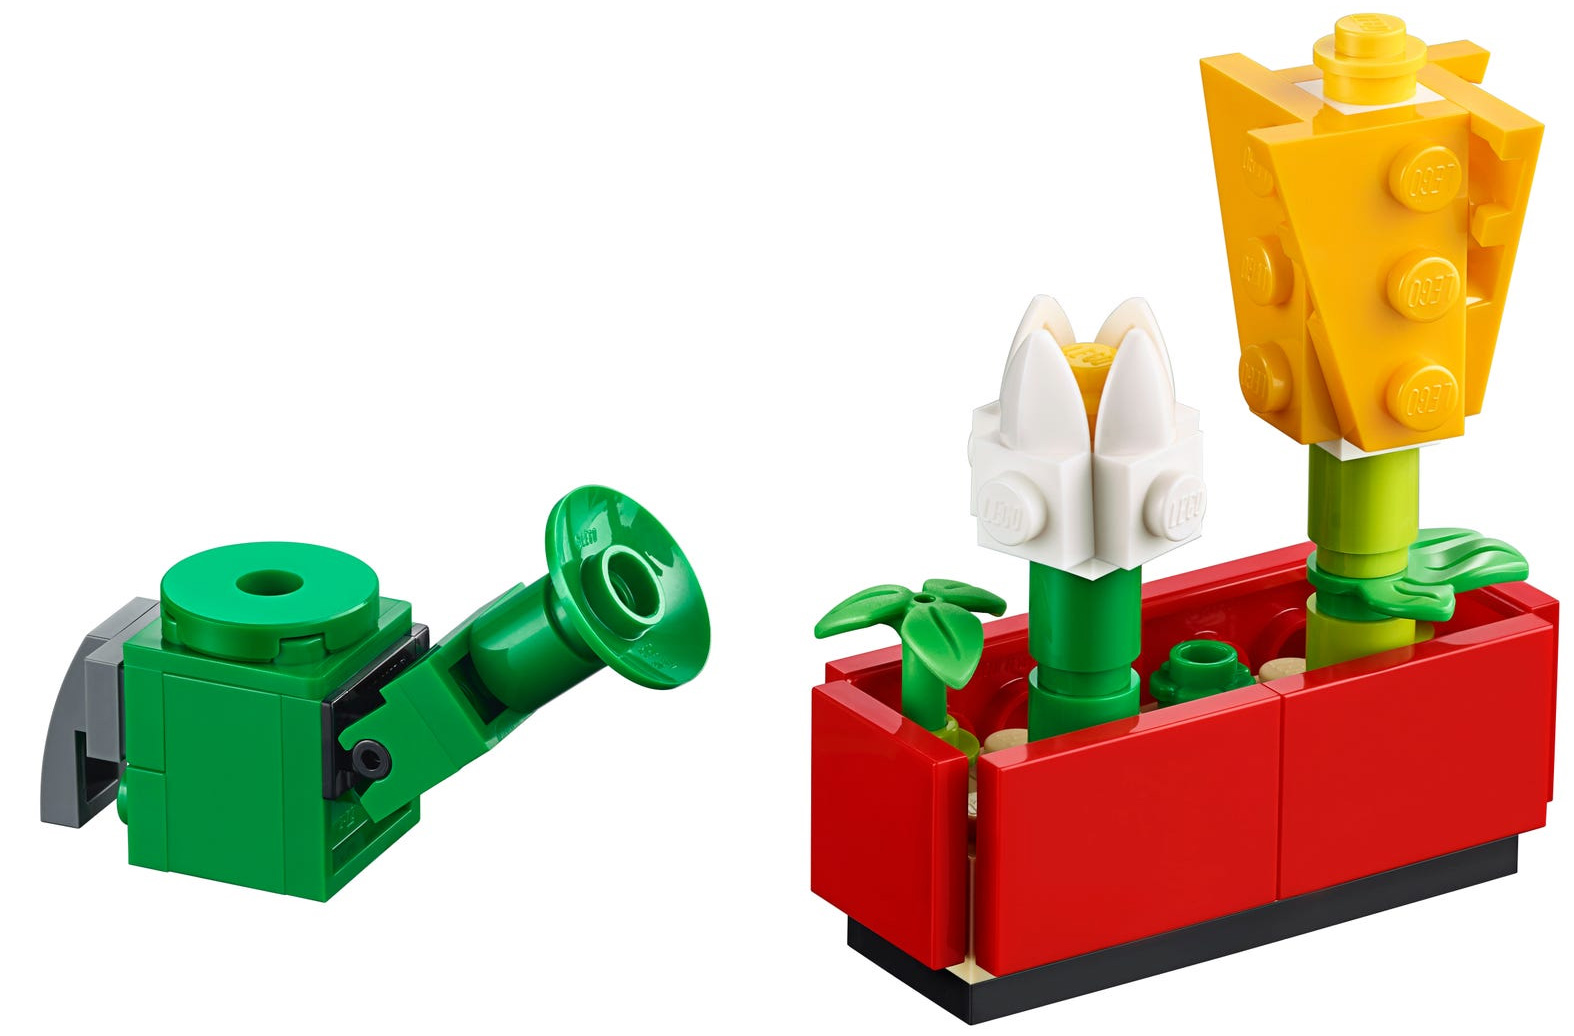 LEGO Objets divers 40310 pas cher, LEGO Xtra - Accessoires sur le thème de  la botanique